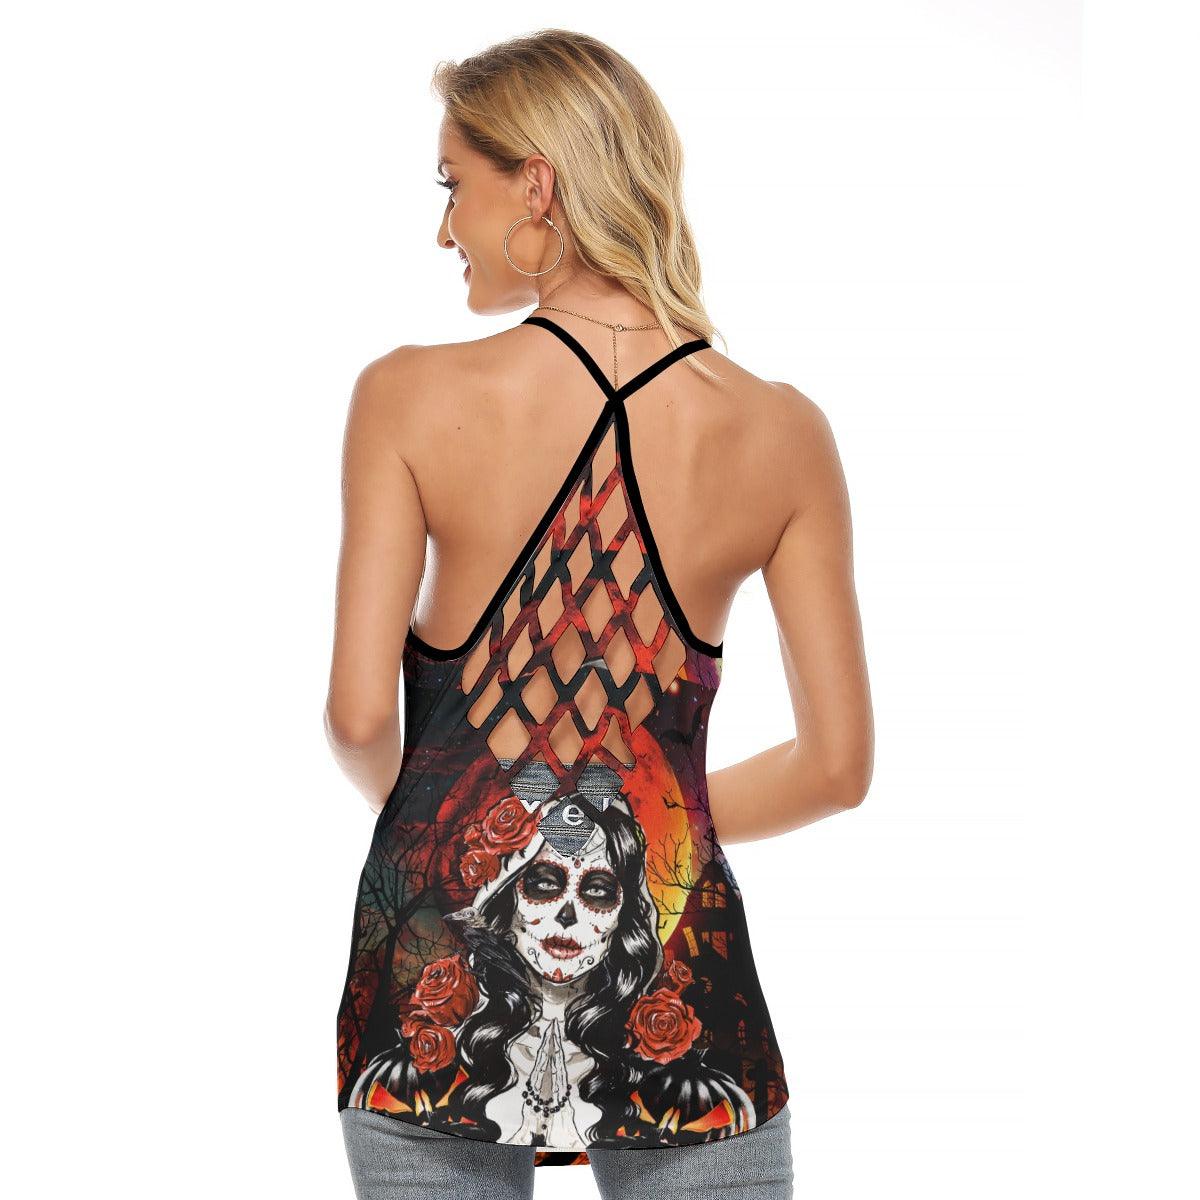 Halloween Girl Pumpkin Criss-Cross Open Back Tank Top, Hot T-Shirt For Women - Wonder Skull